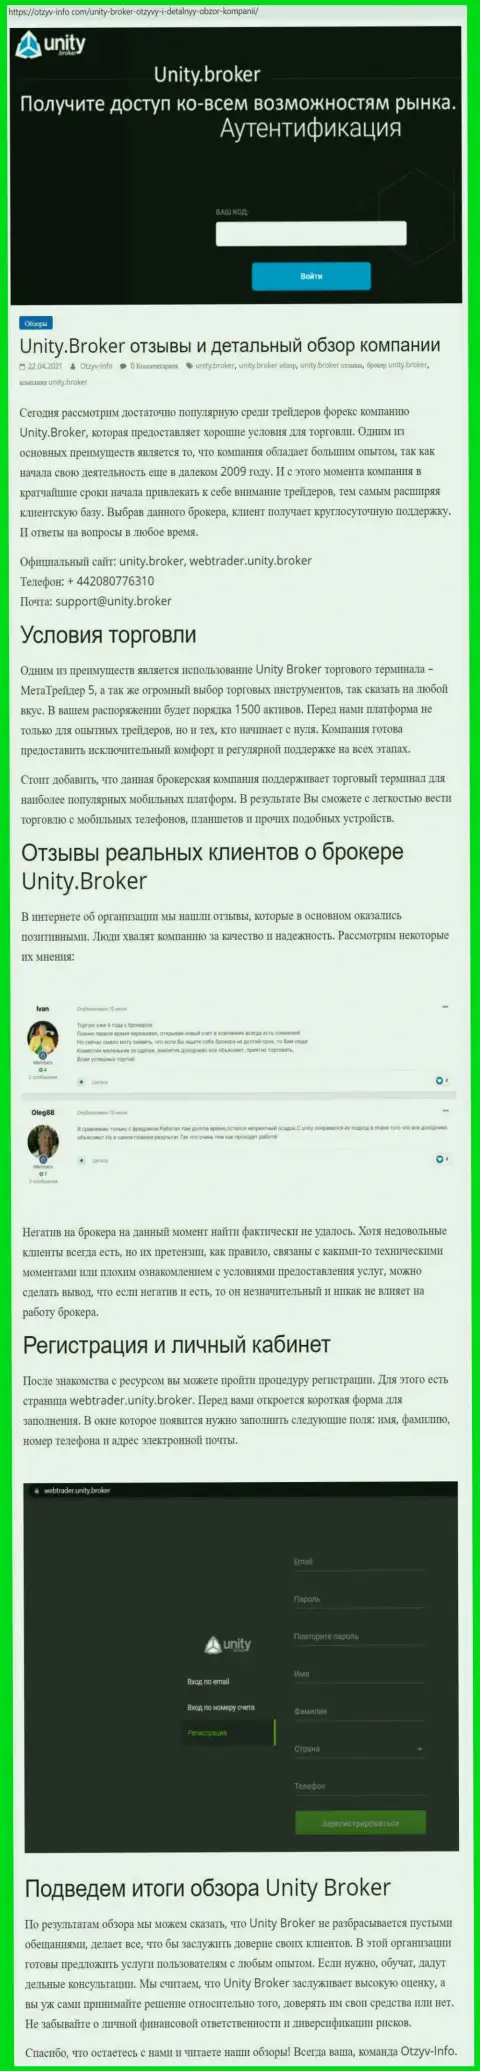 Характеристика работы форекс-брокерской организации Unity Broker на сайте отзыв инфо ком